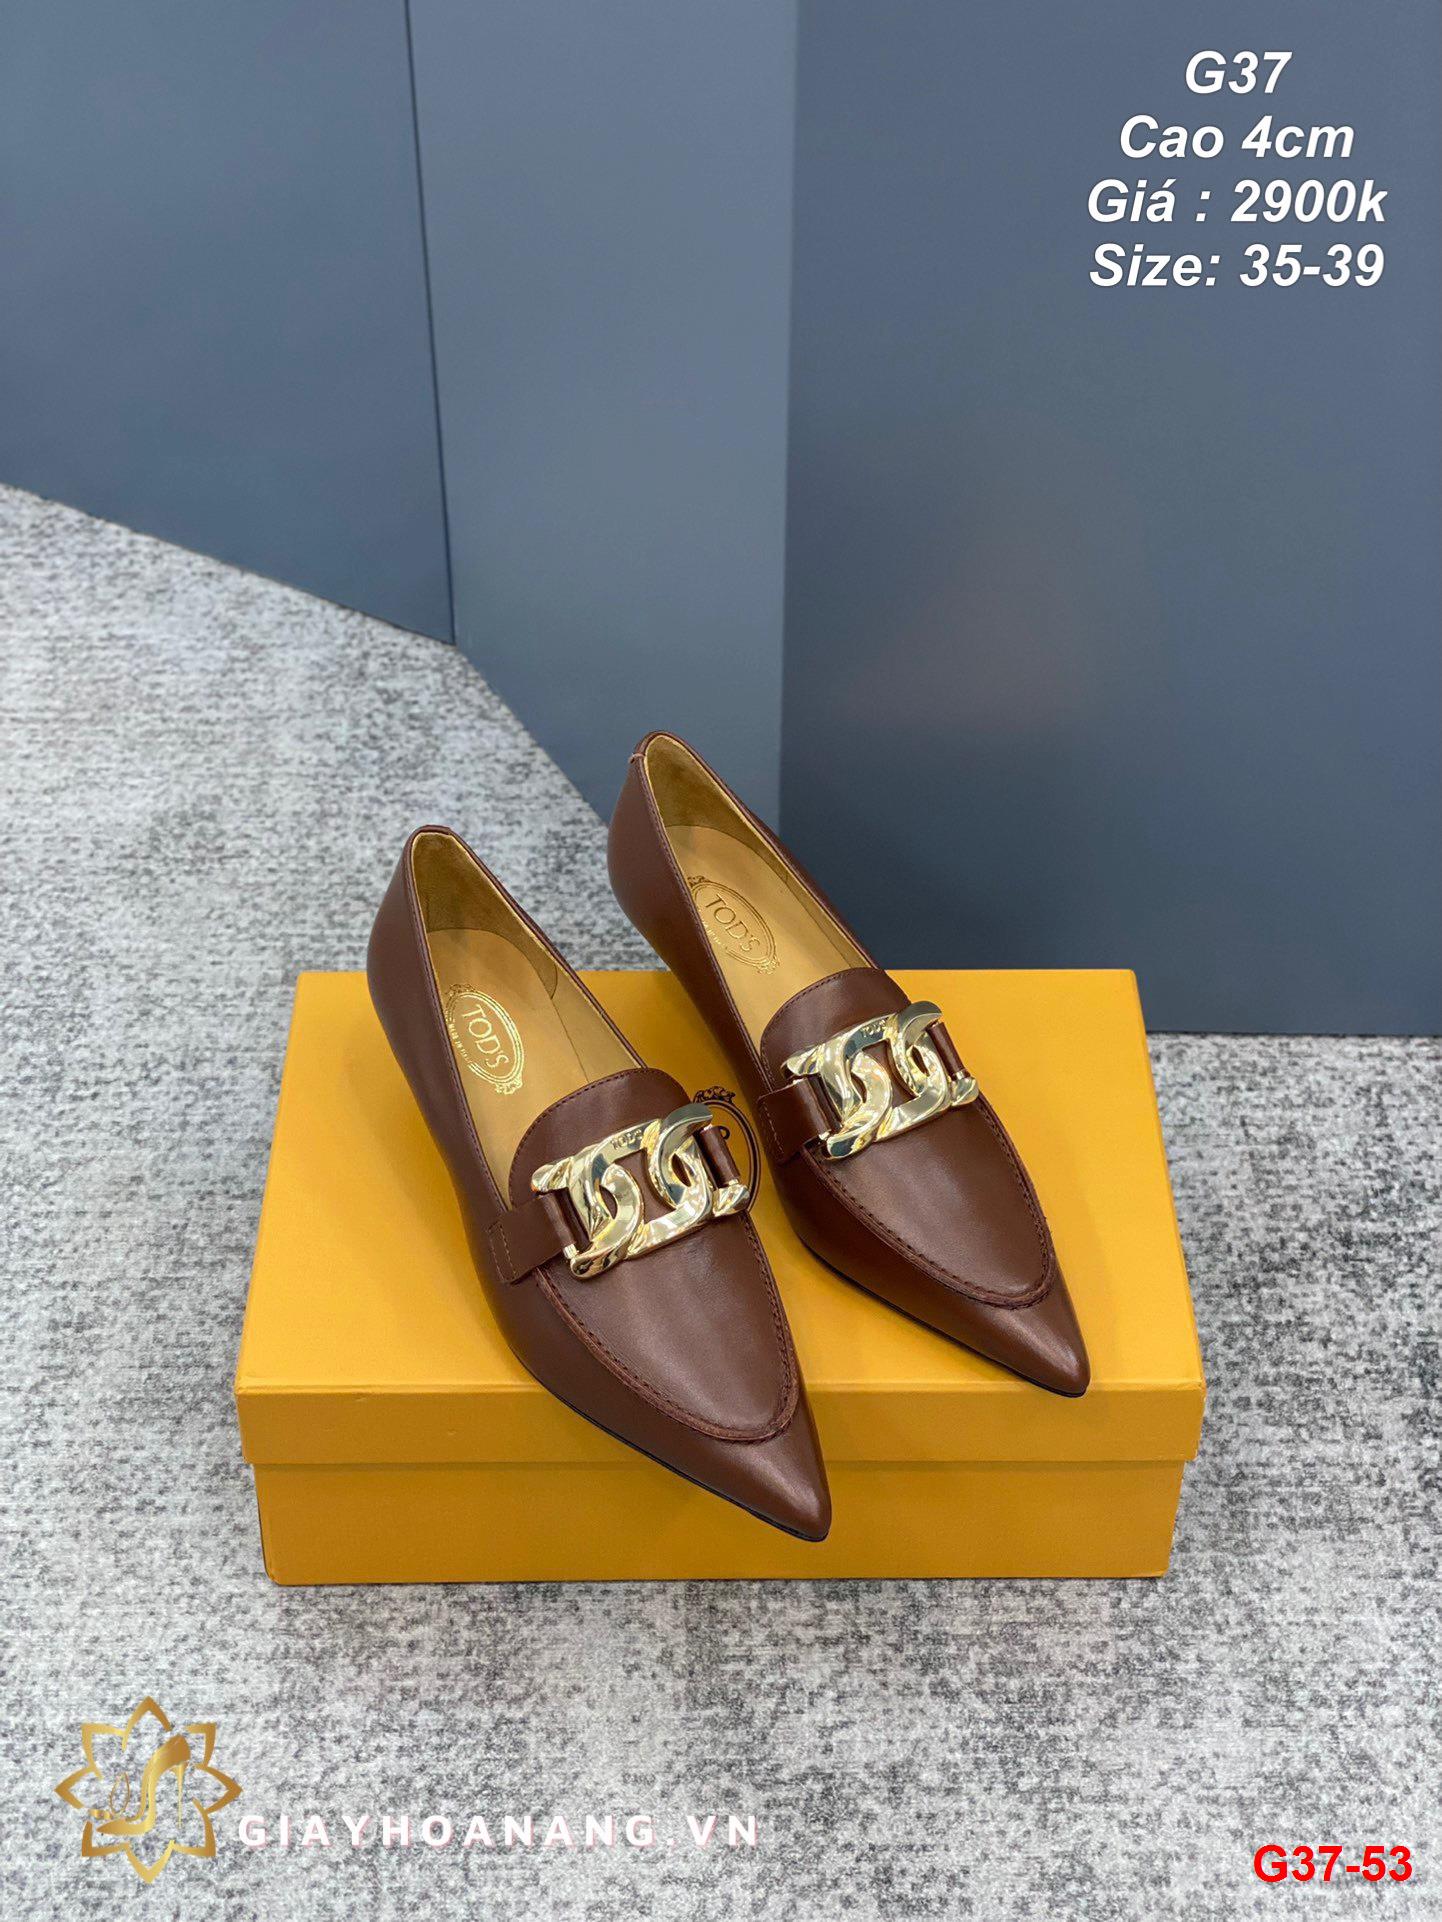 G37-53 Gucci giày cao 4cm siêu cấp